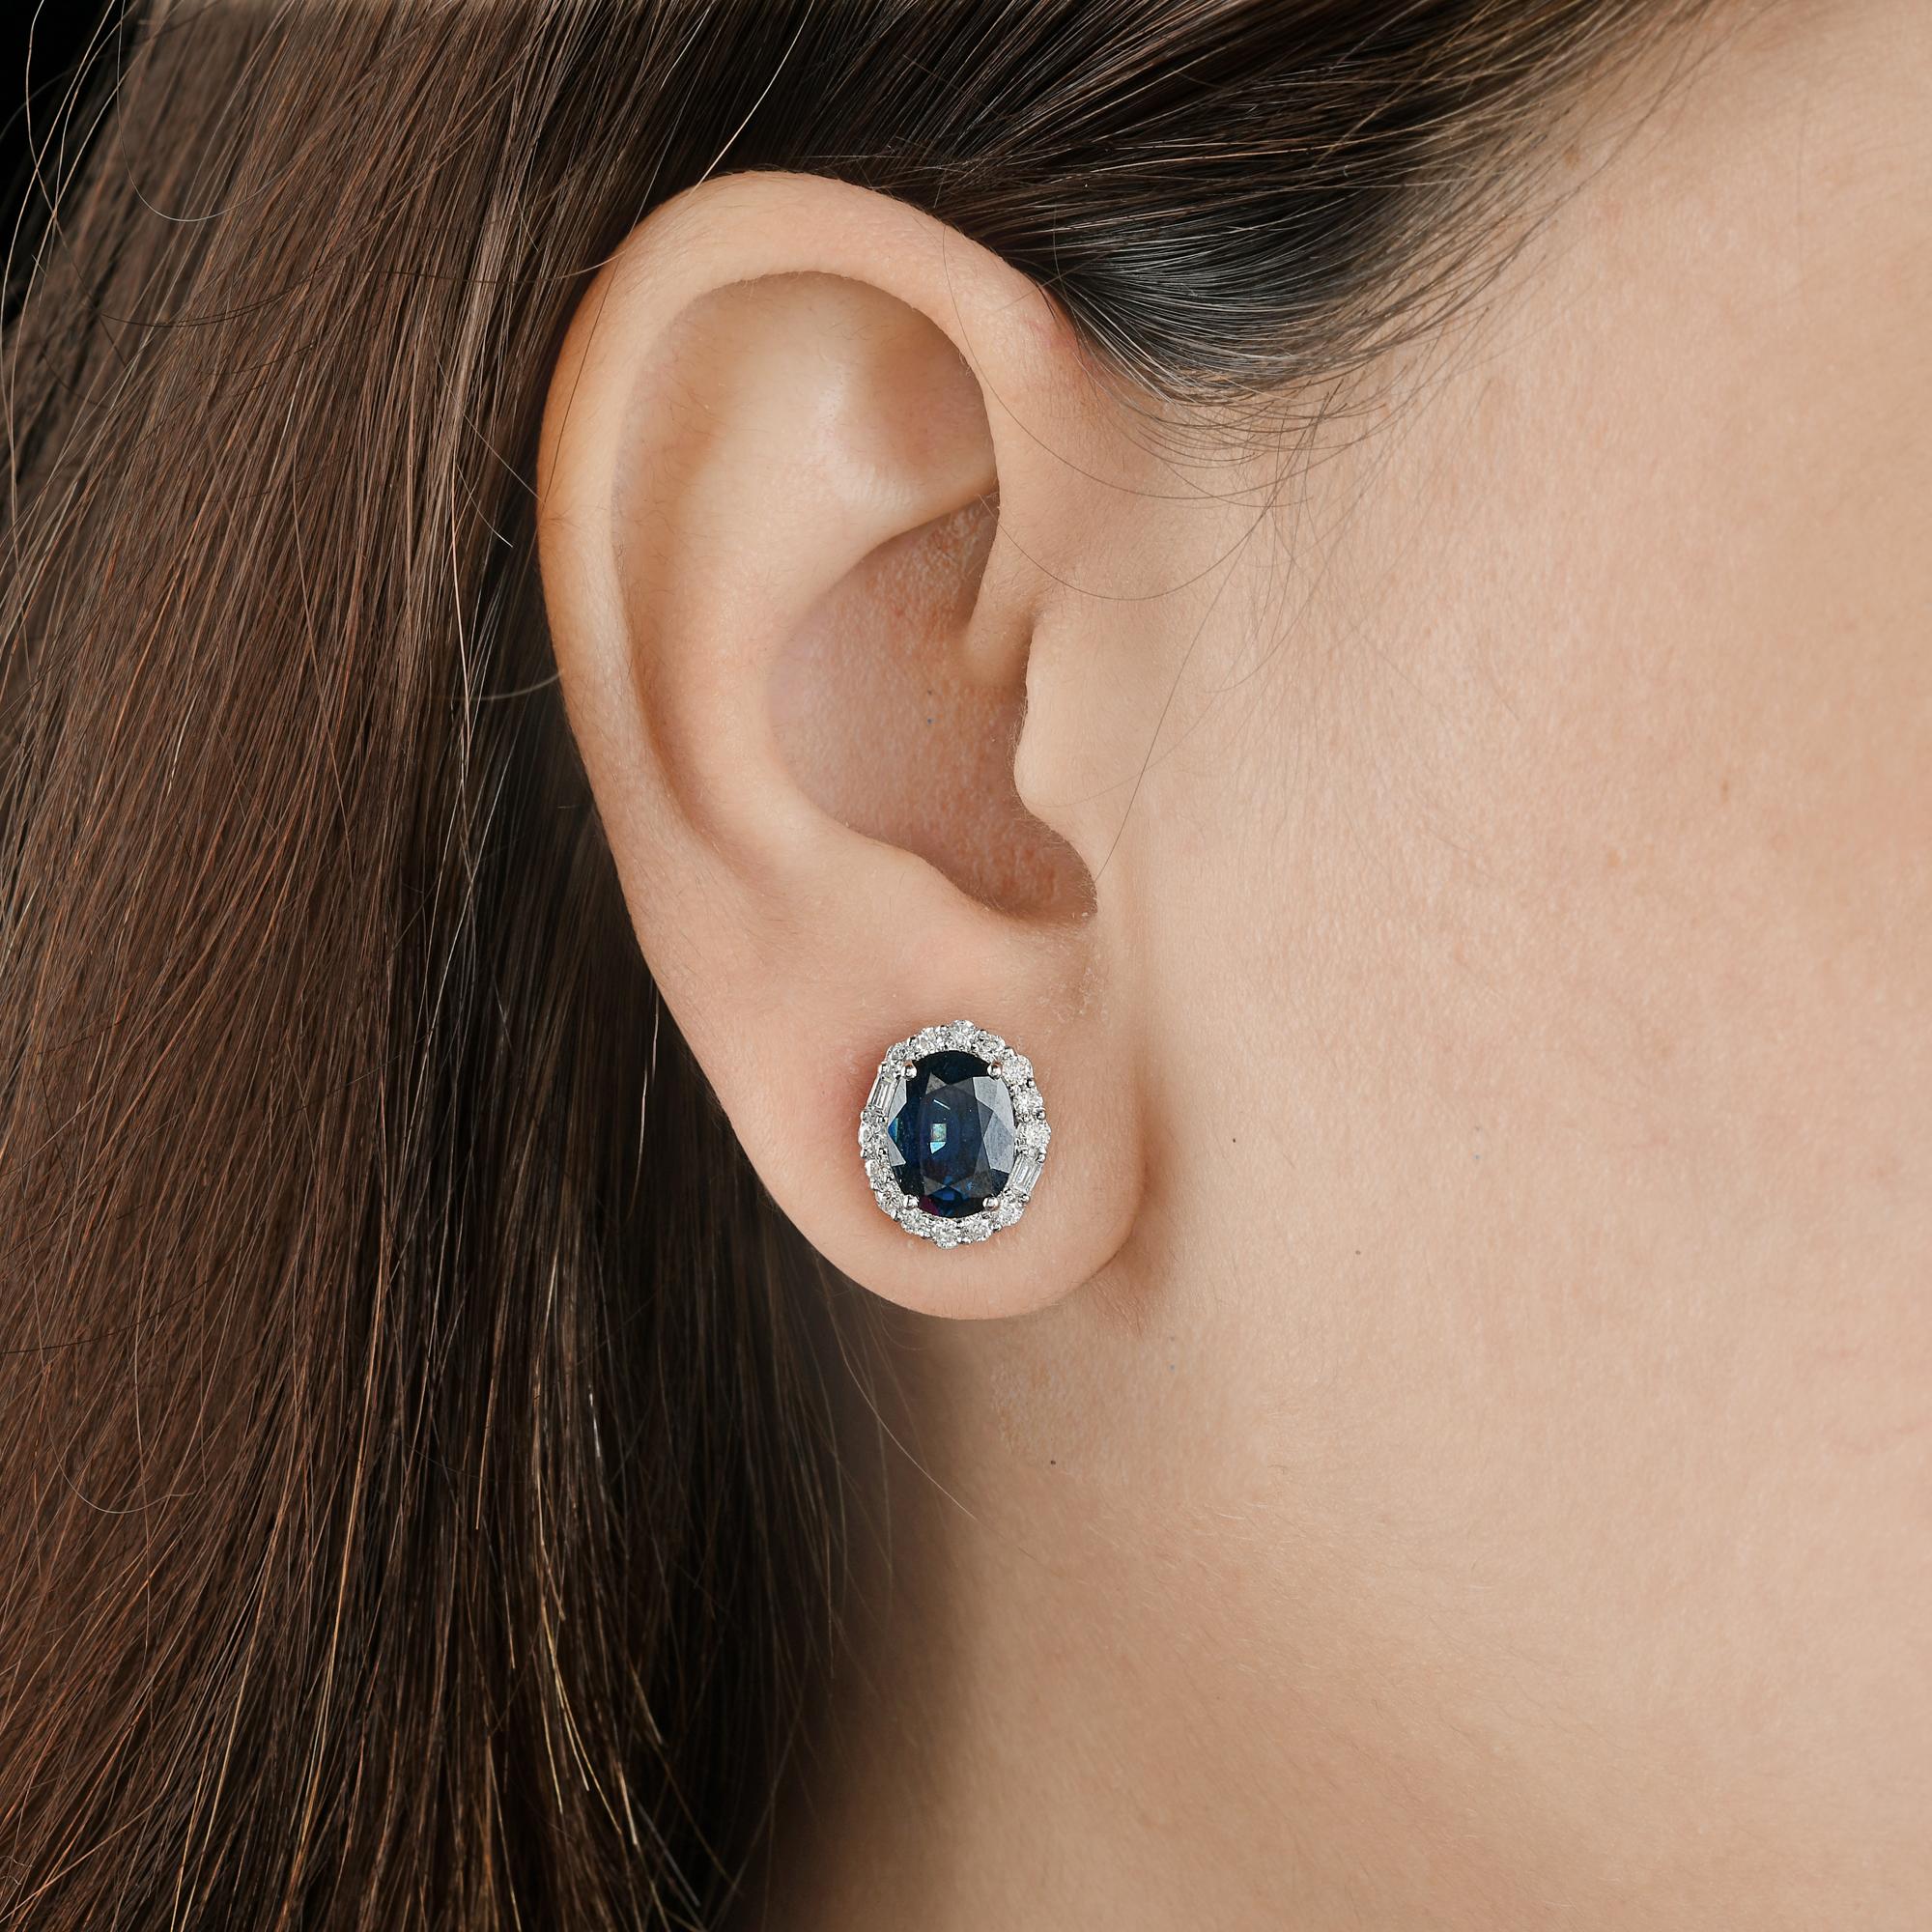 Oval Cut Blue Sapphire Gemstone Stud Earrings Diamond 18 Karat White Gold Fine Jewelry For Sale